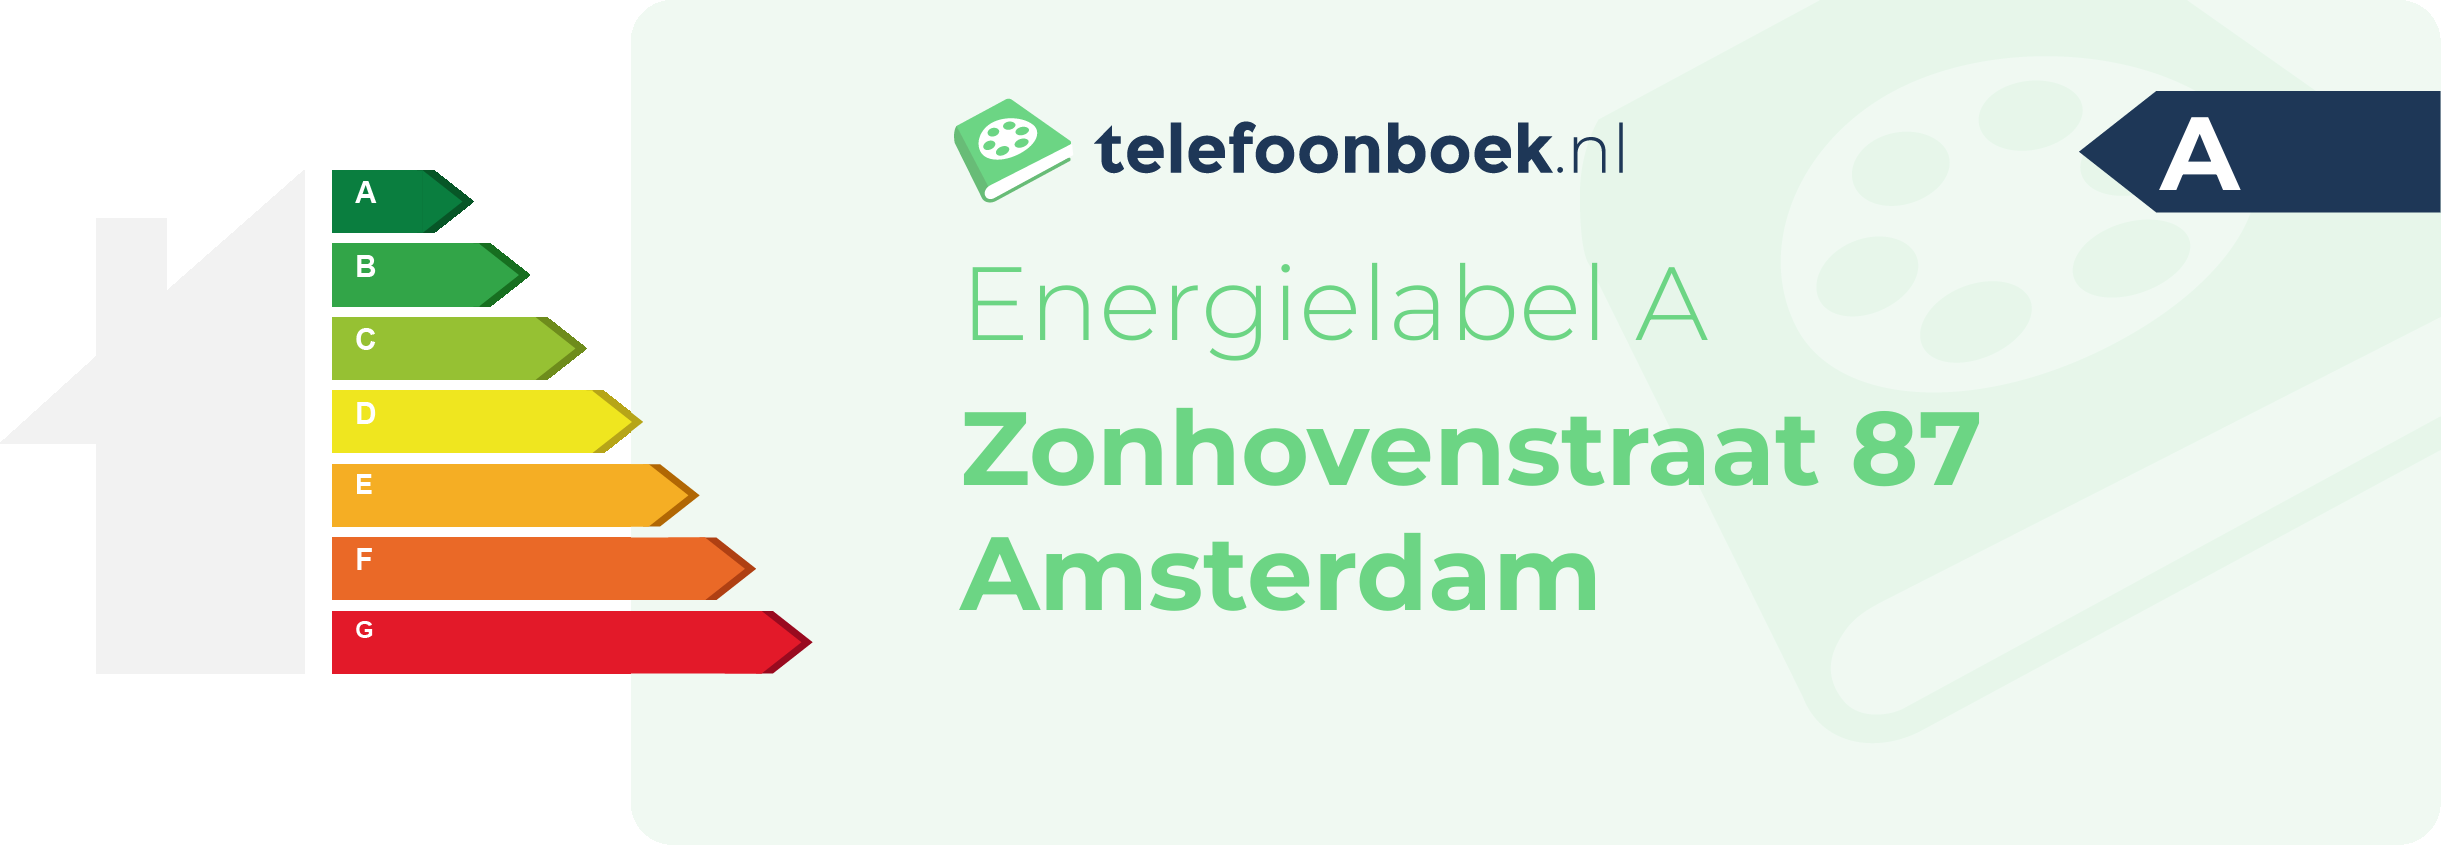 Energielabel Zonhovenstraat 87 Amsterdam